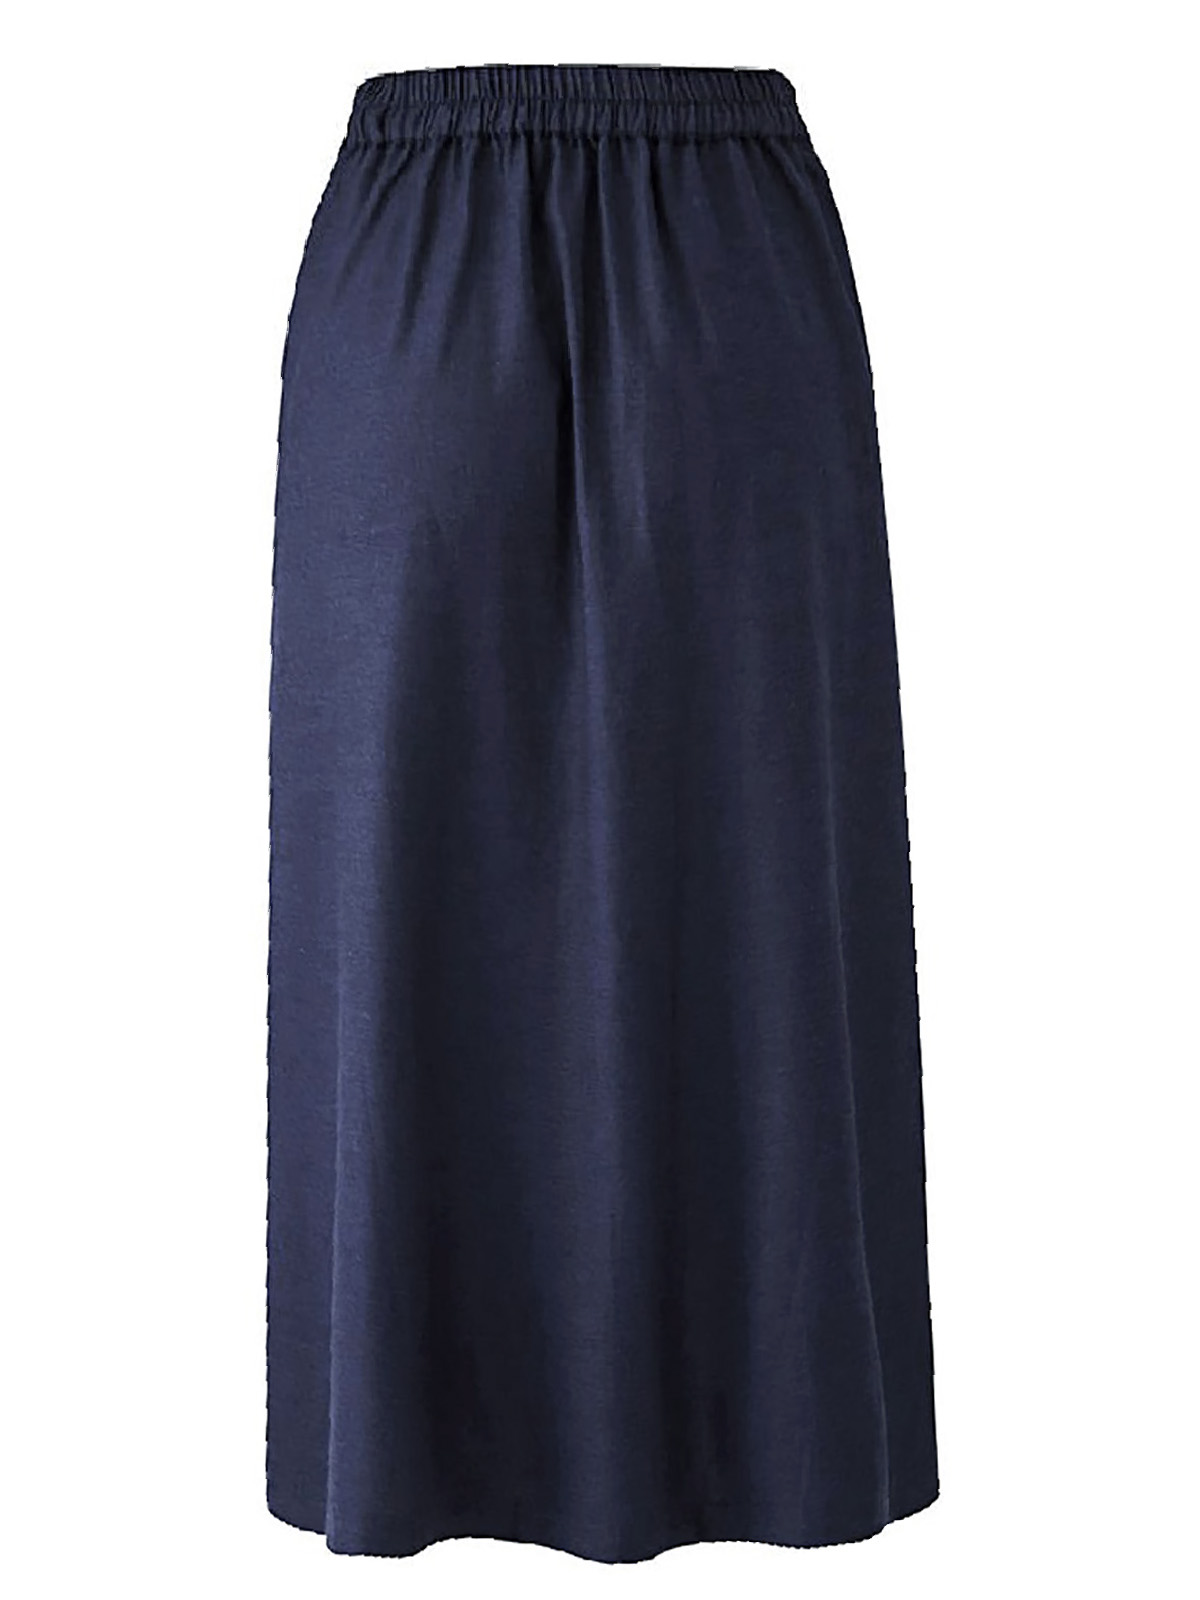 Capsule - - Capsule NAVY Linen Blend Pull On Maxi Skirt - Plus Size 14 ...